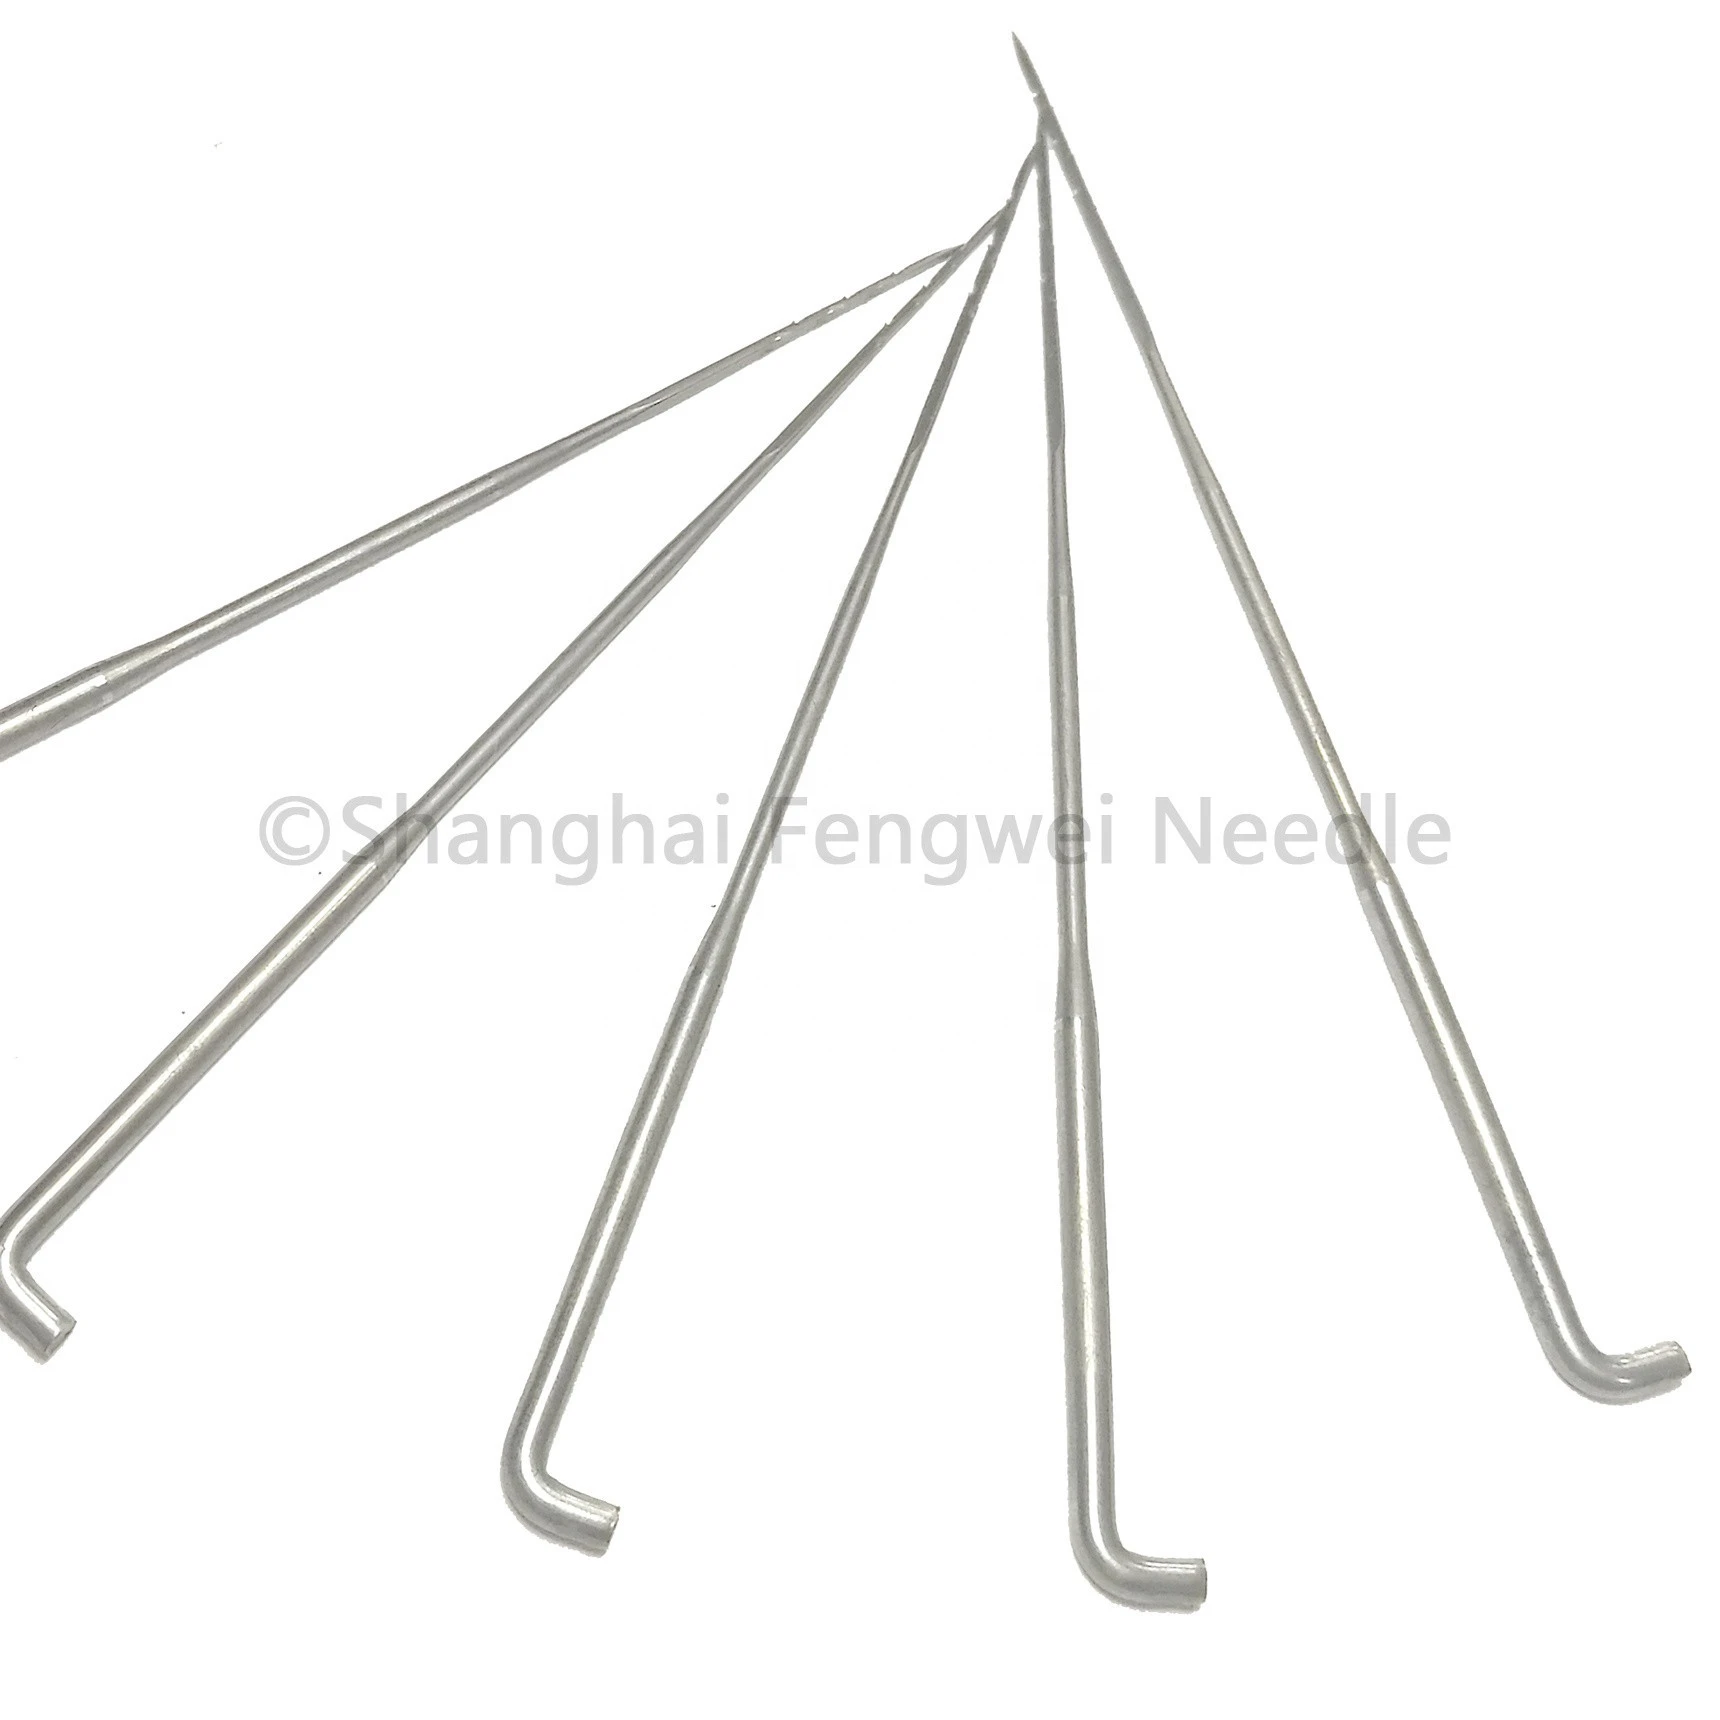 Chinese Triangular Felting Needles of felting machine